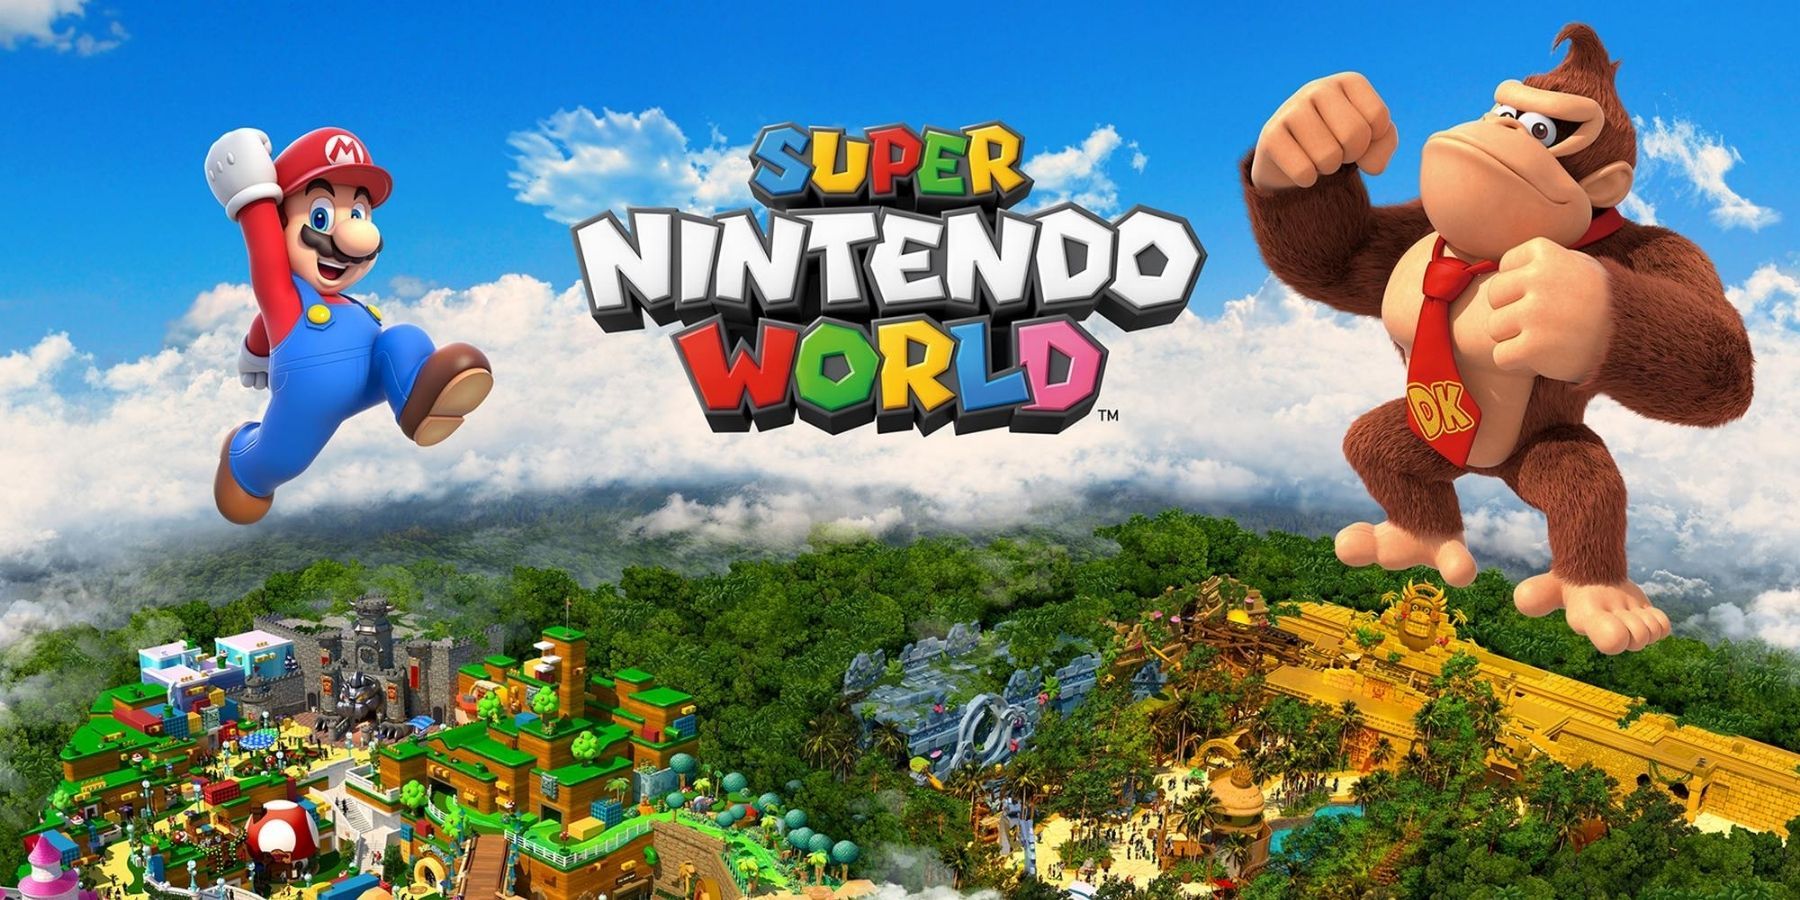 Alle de ryktede attraksjonene ved Super Nintendo World’s Donkey Kong Expansion